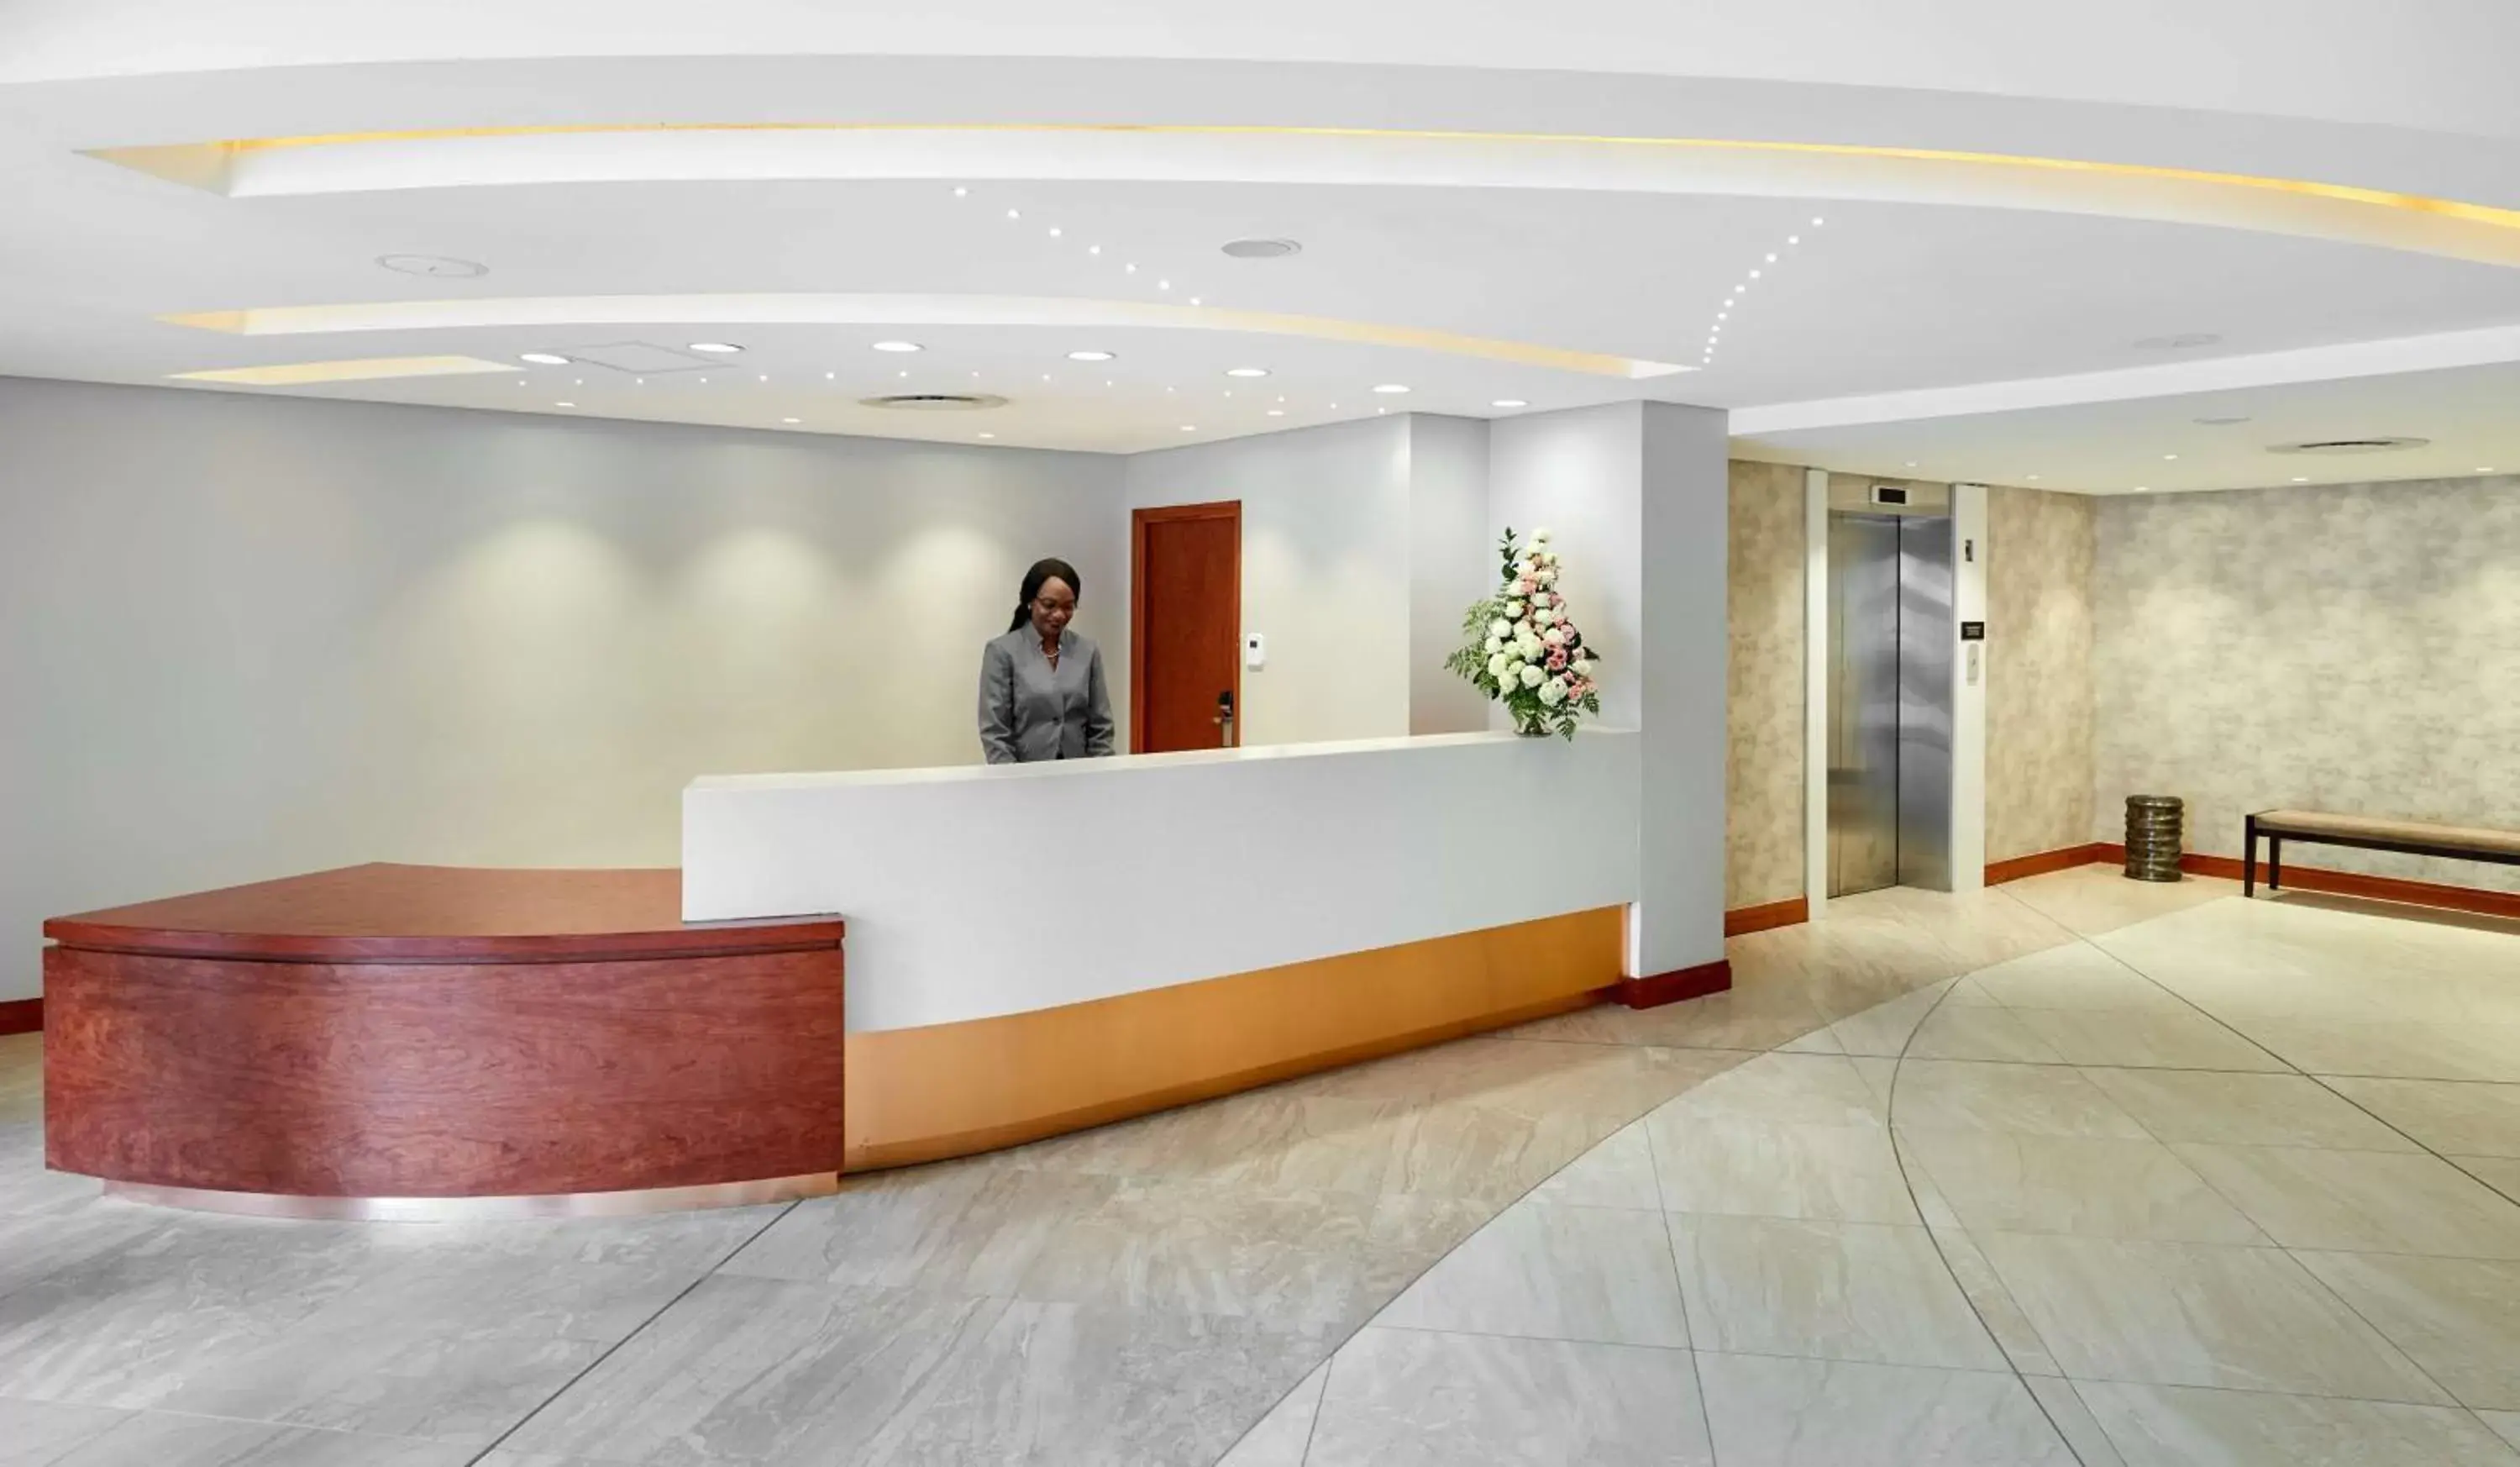 Lobby or reception, Lobby/Reception in Hilton Garden Inn Society Business Park